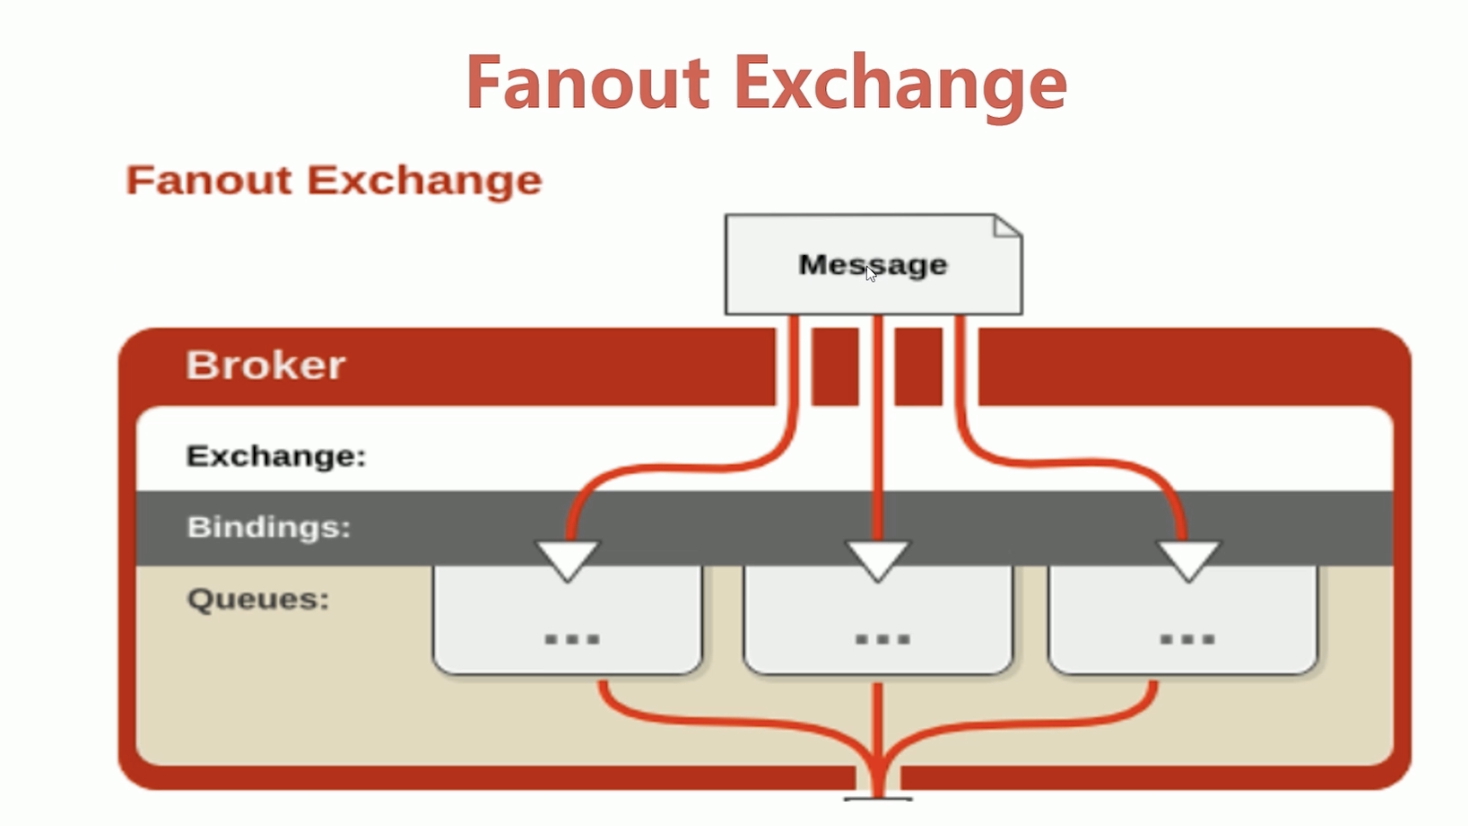 Fanout Exchange